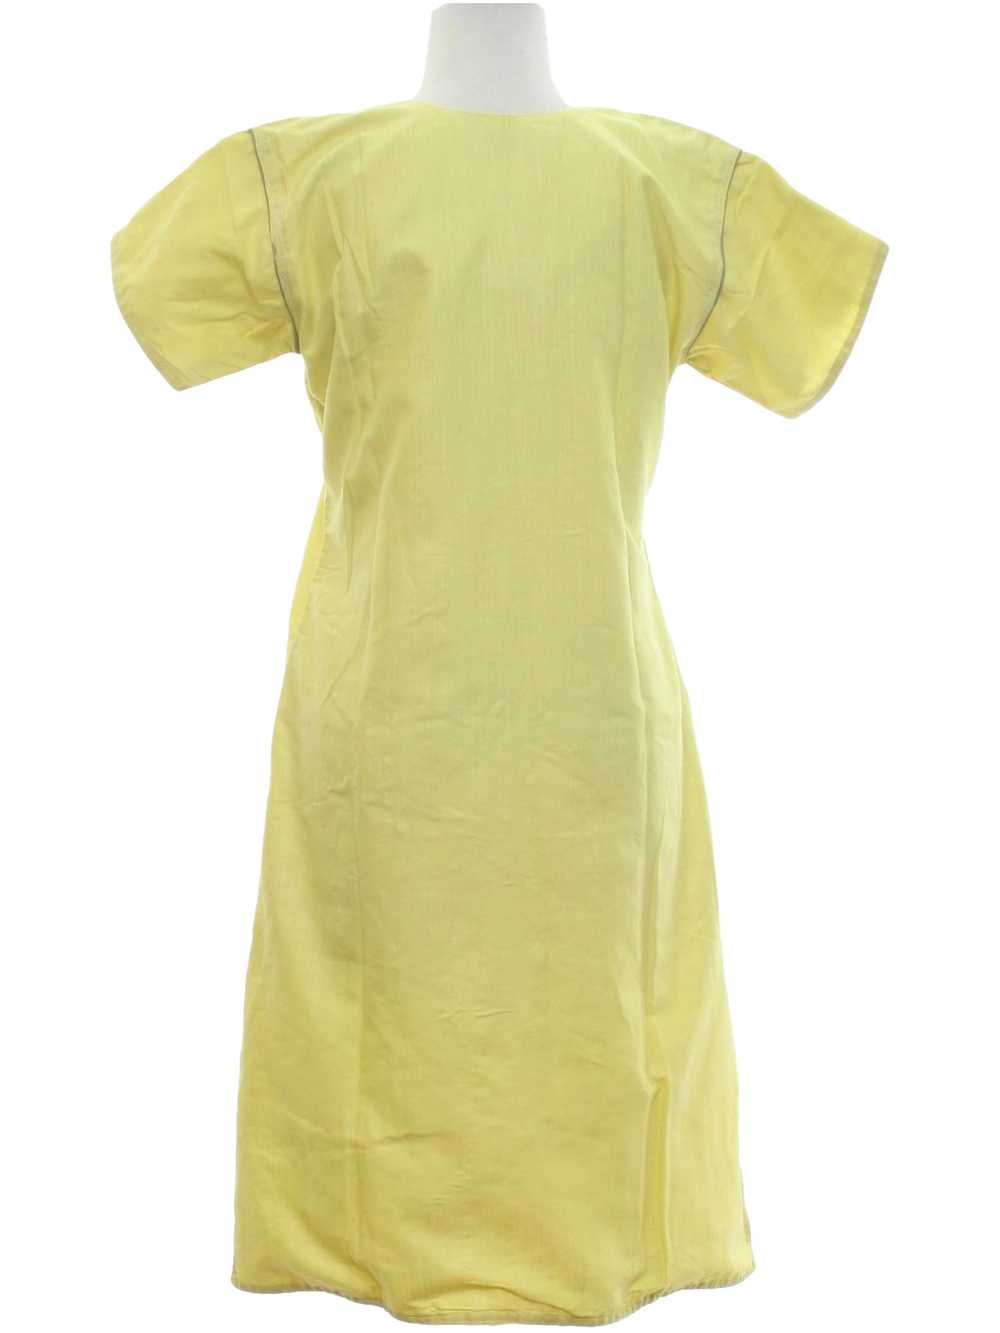 1990's Salwar Kameez Tunic Dress - image 3